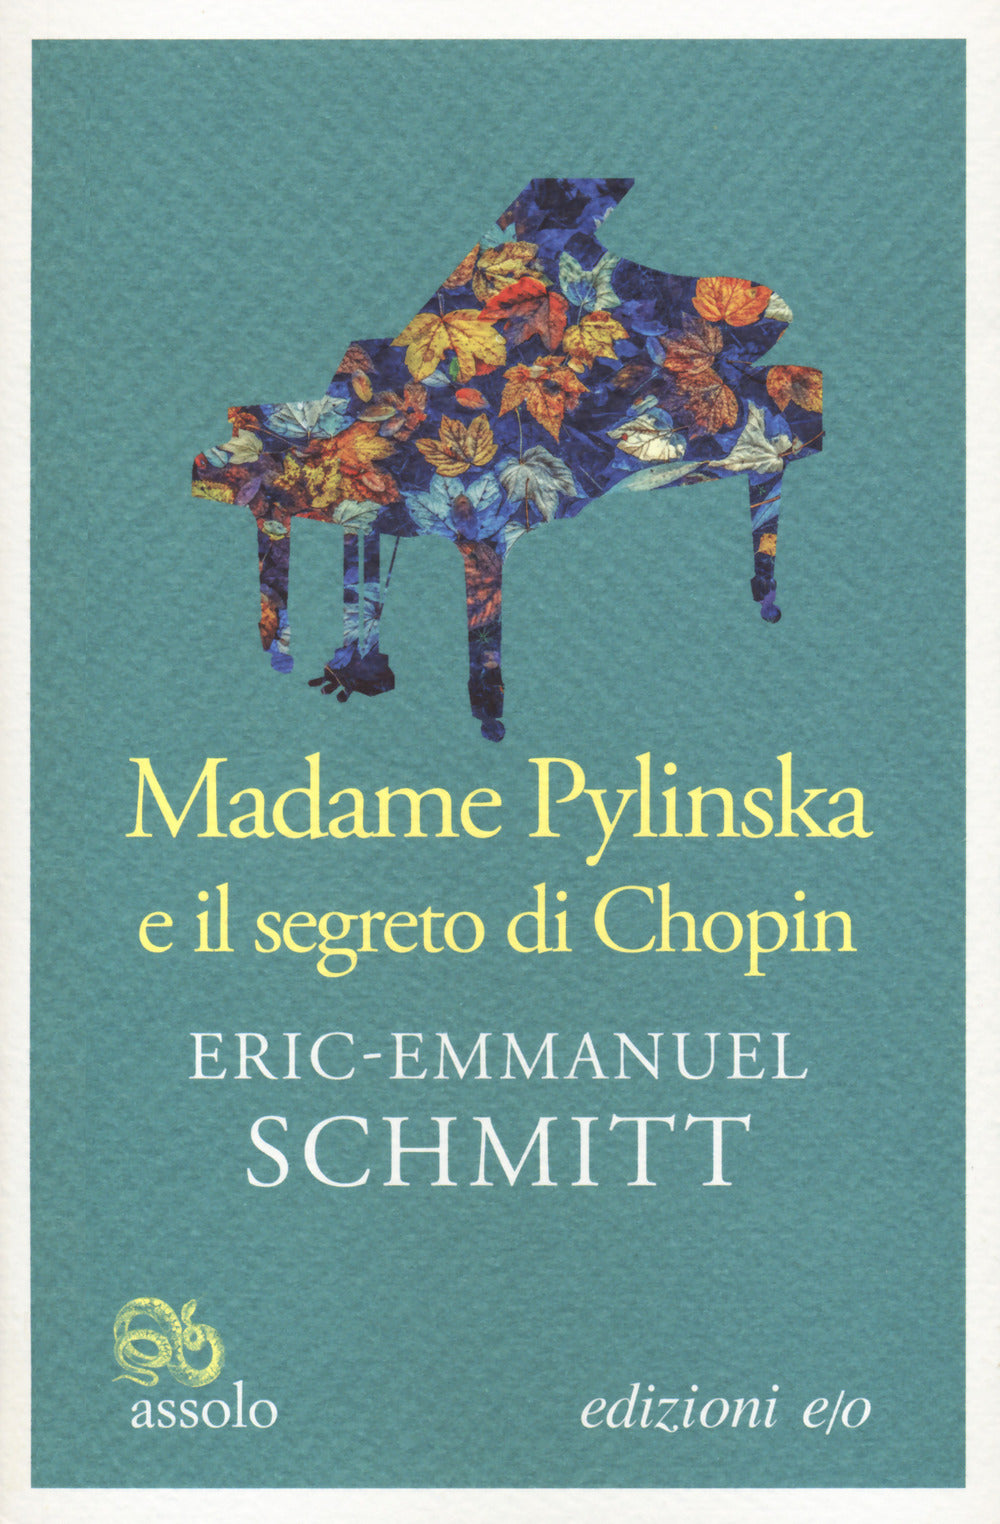 Madame Pylinska e il segreto di Chopin.